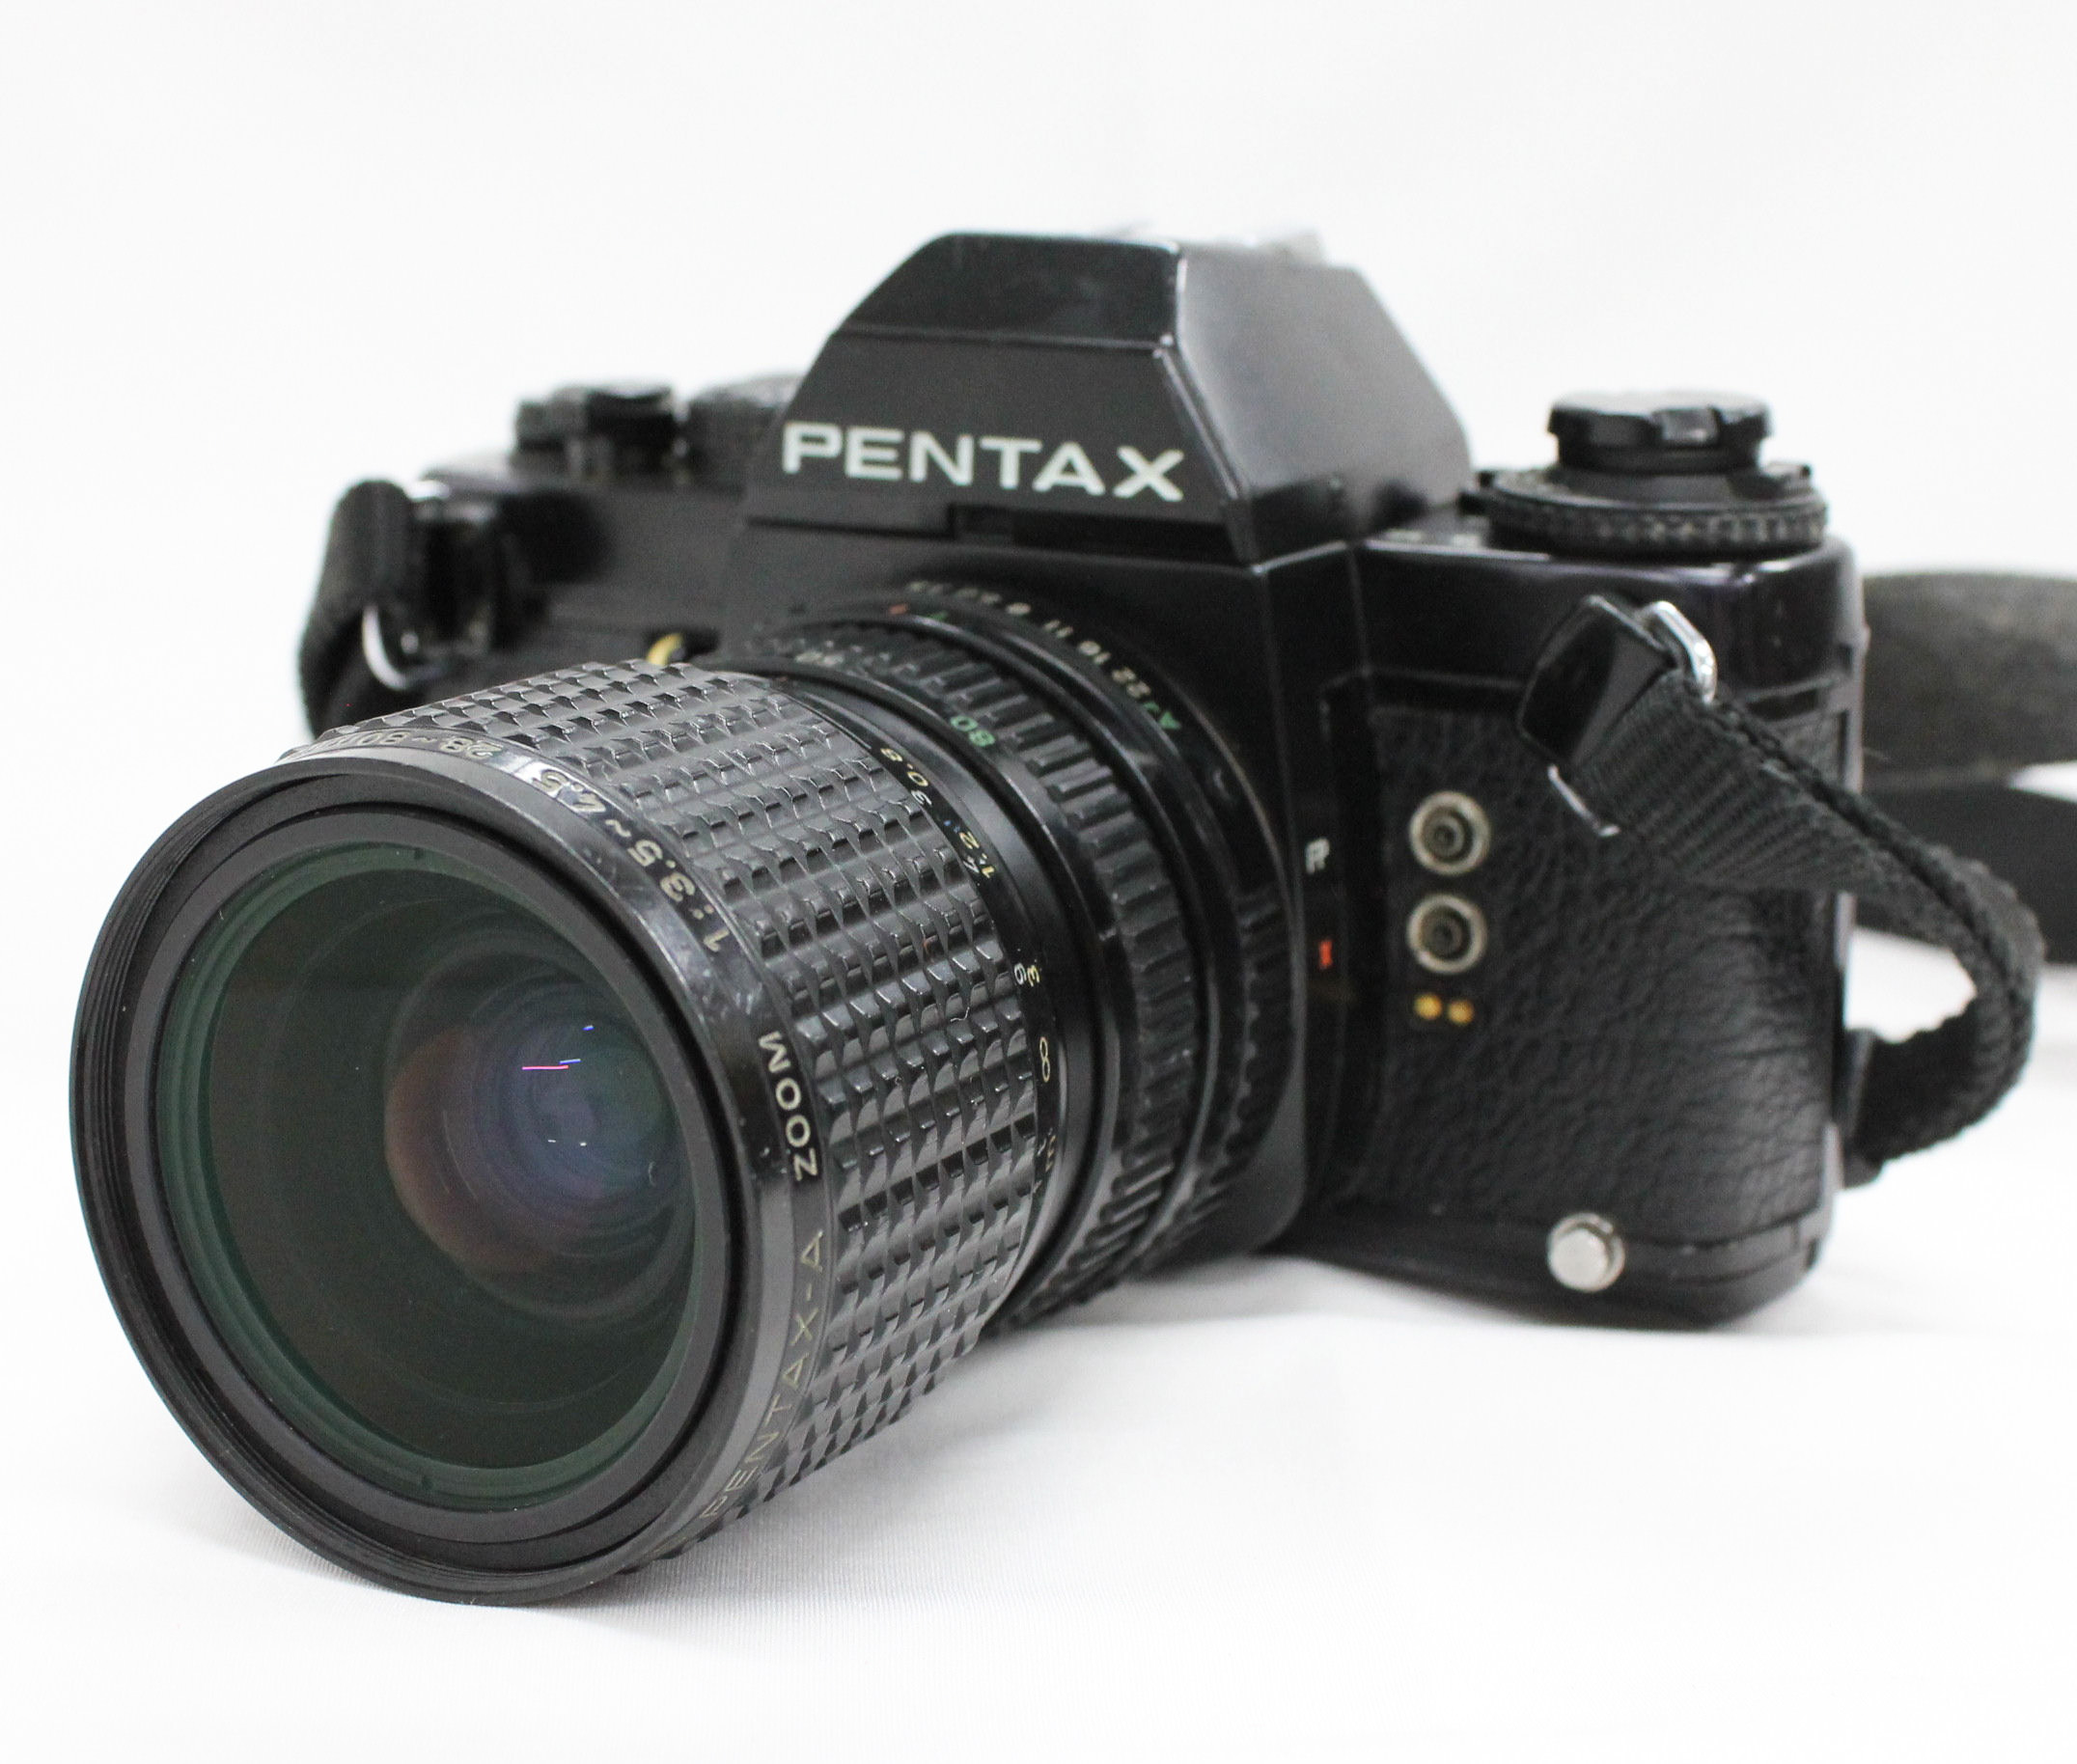 PENTAX LX 35mm SLR Film Camera with SMC PENTAX-A ZOOM F/3.5-4.5 28-80mm  Lens from Japan (C1236) | Big Fish J-Camera (Big Fish J-Shop)